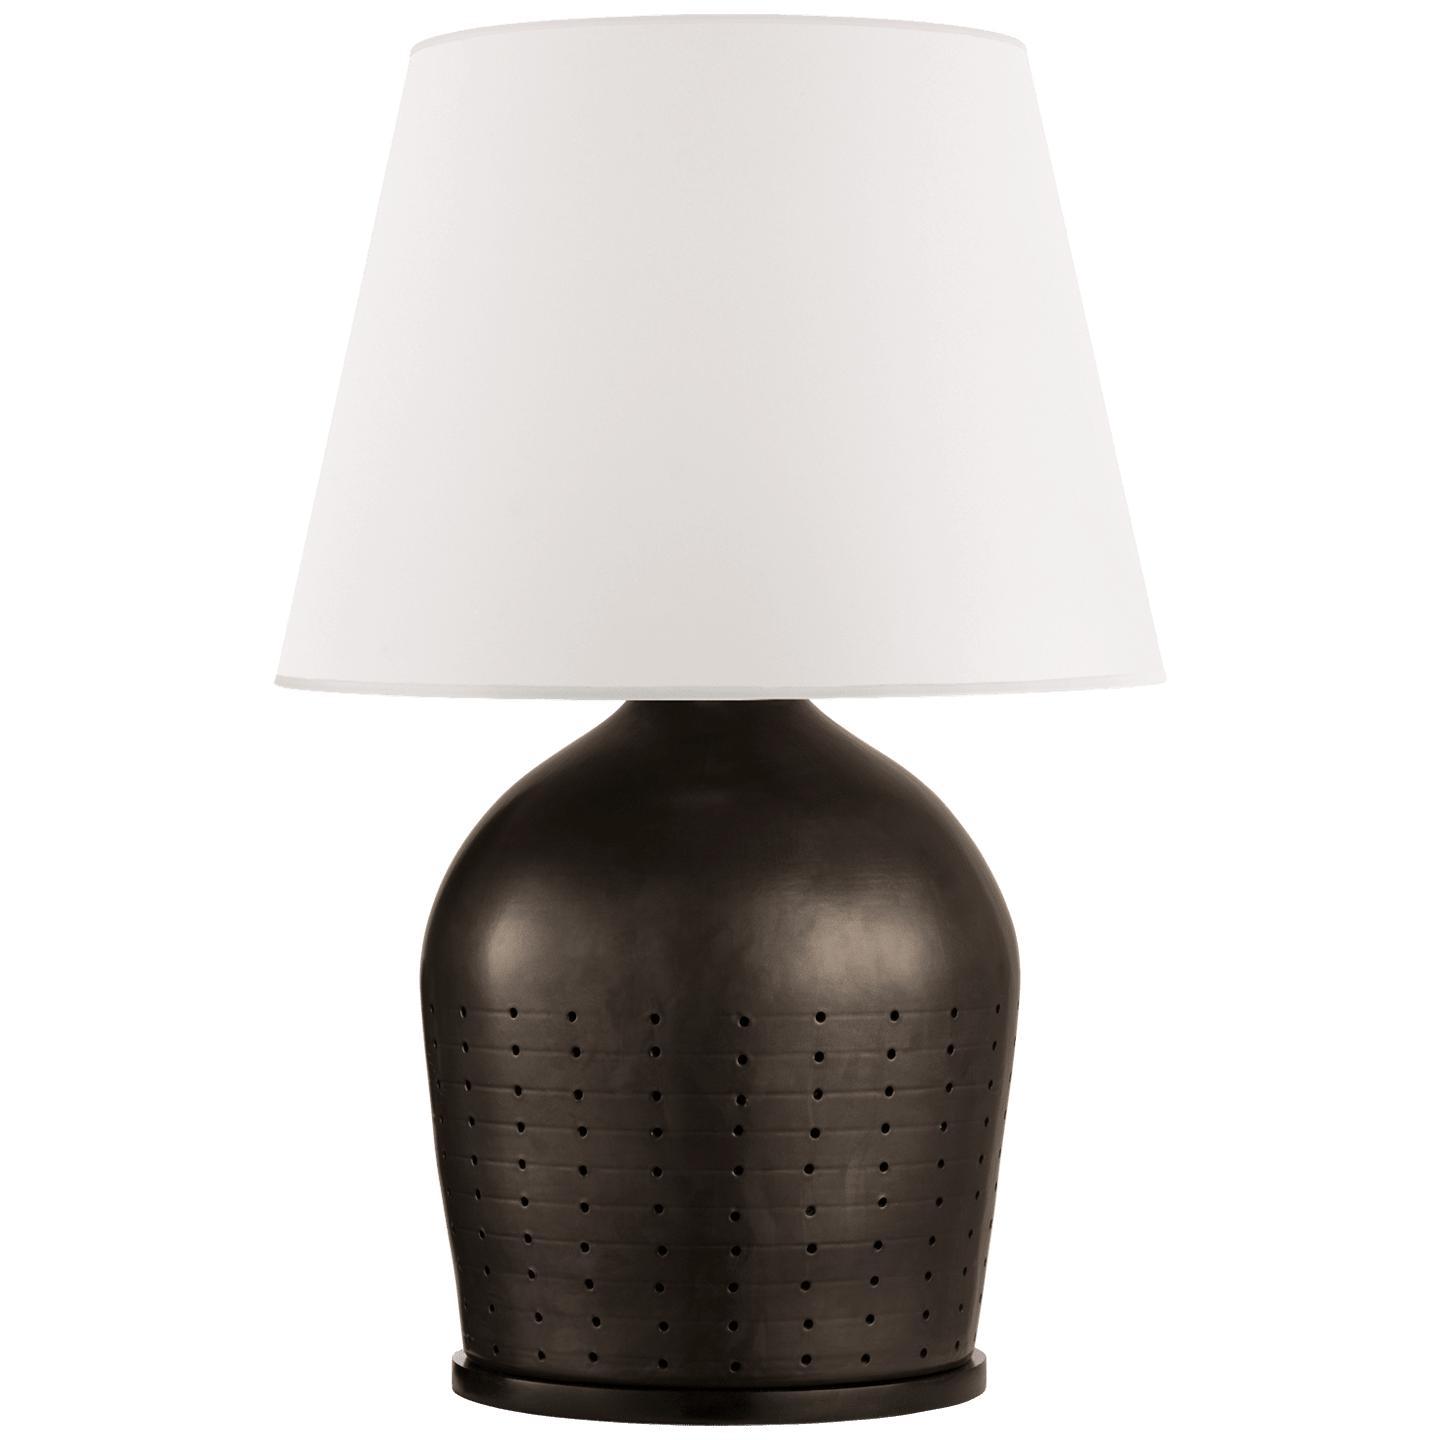 Купить Настольная лампа Halifax Large Table Lamp в интернет-магазине roooms.ru